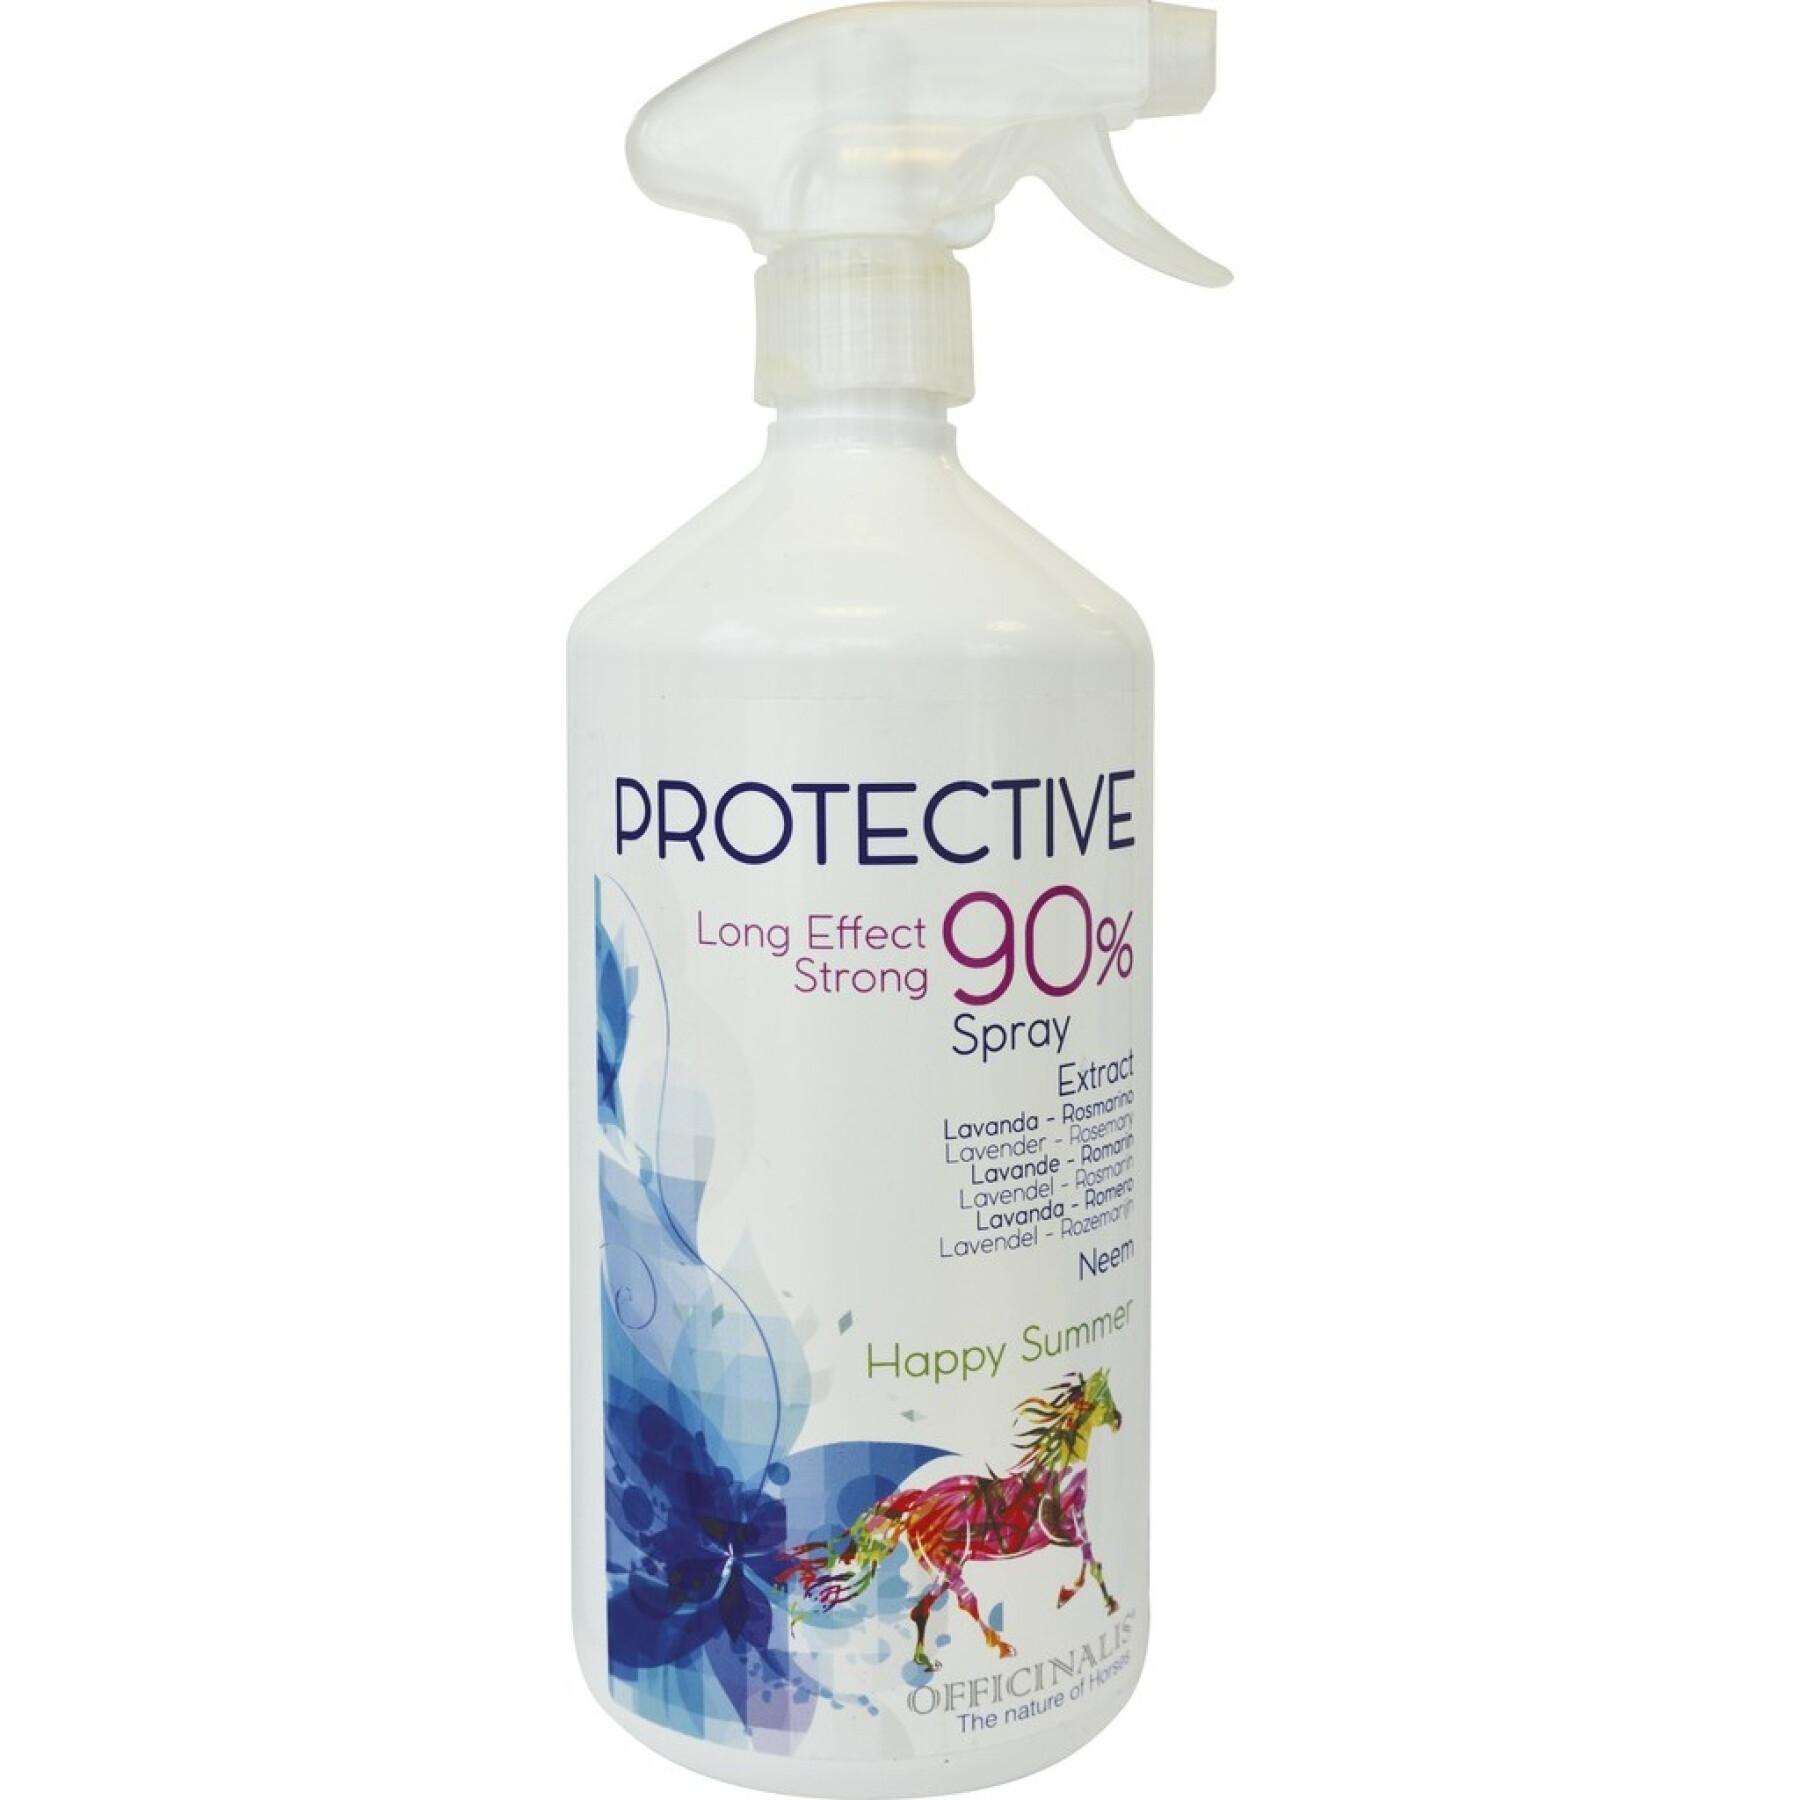 Insektenschutzspray für Pferde protective 90 %. Officinalis